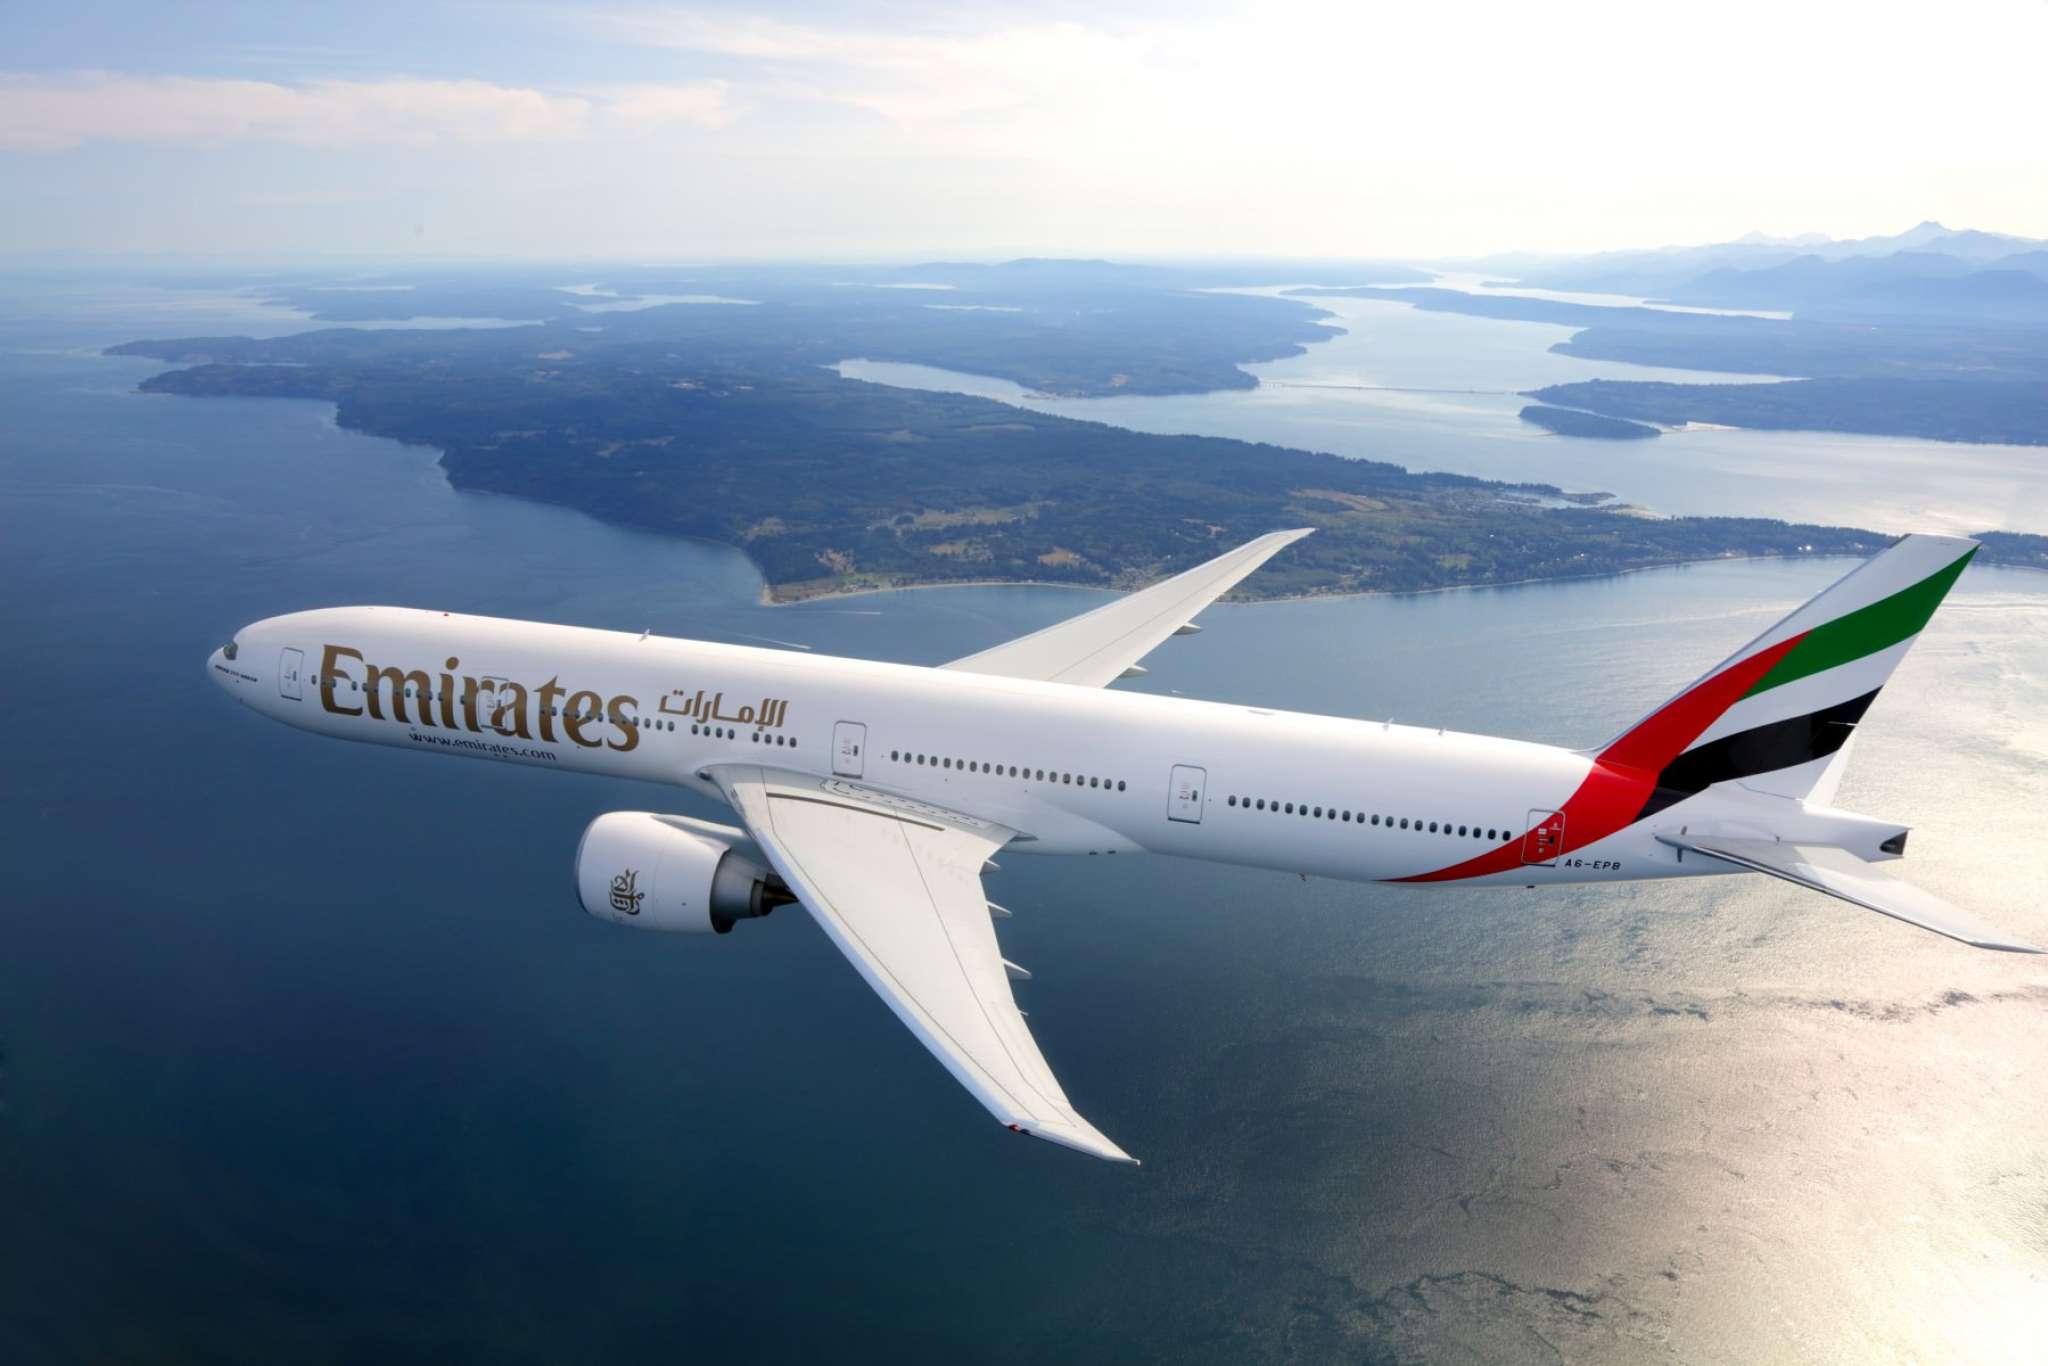 Emirates.